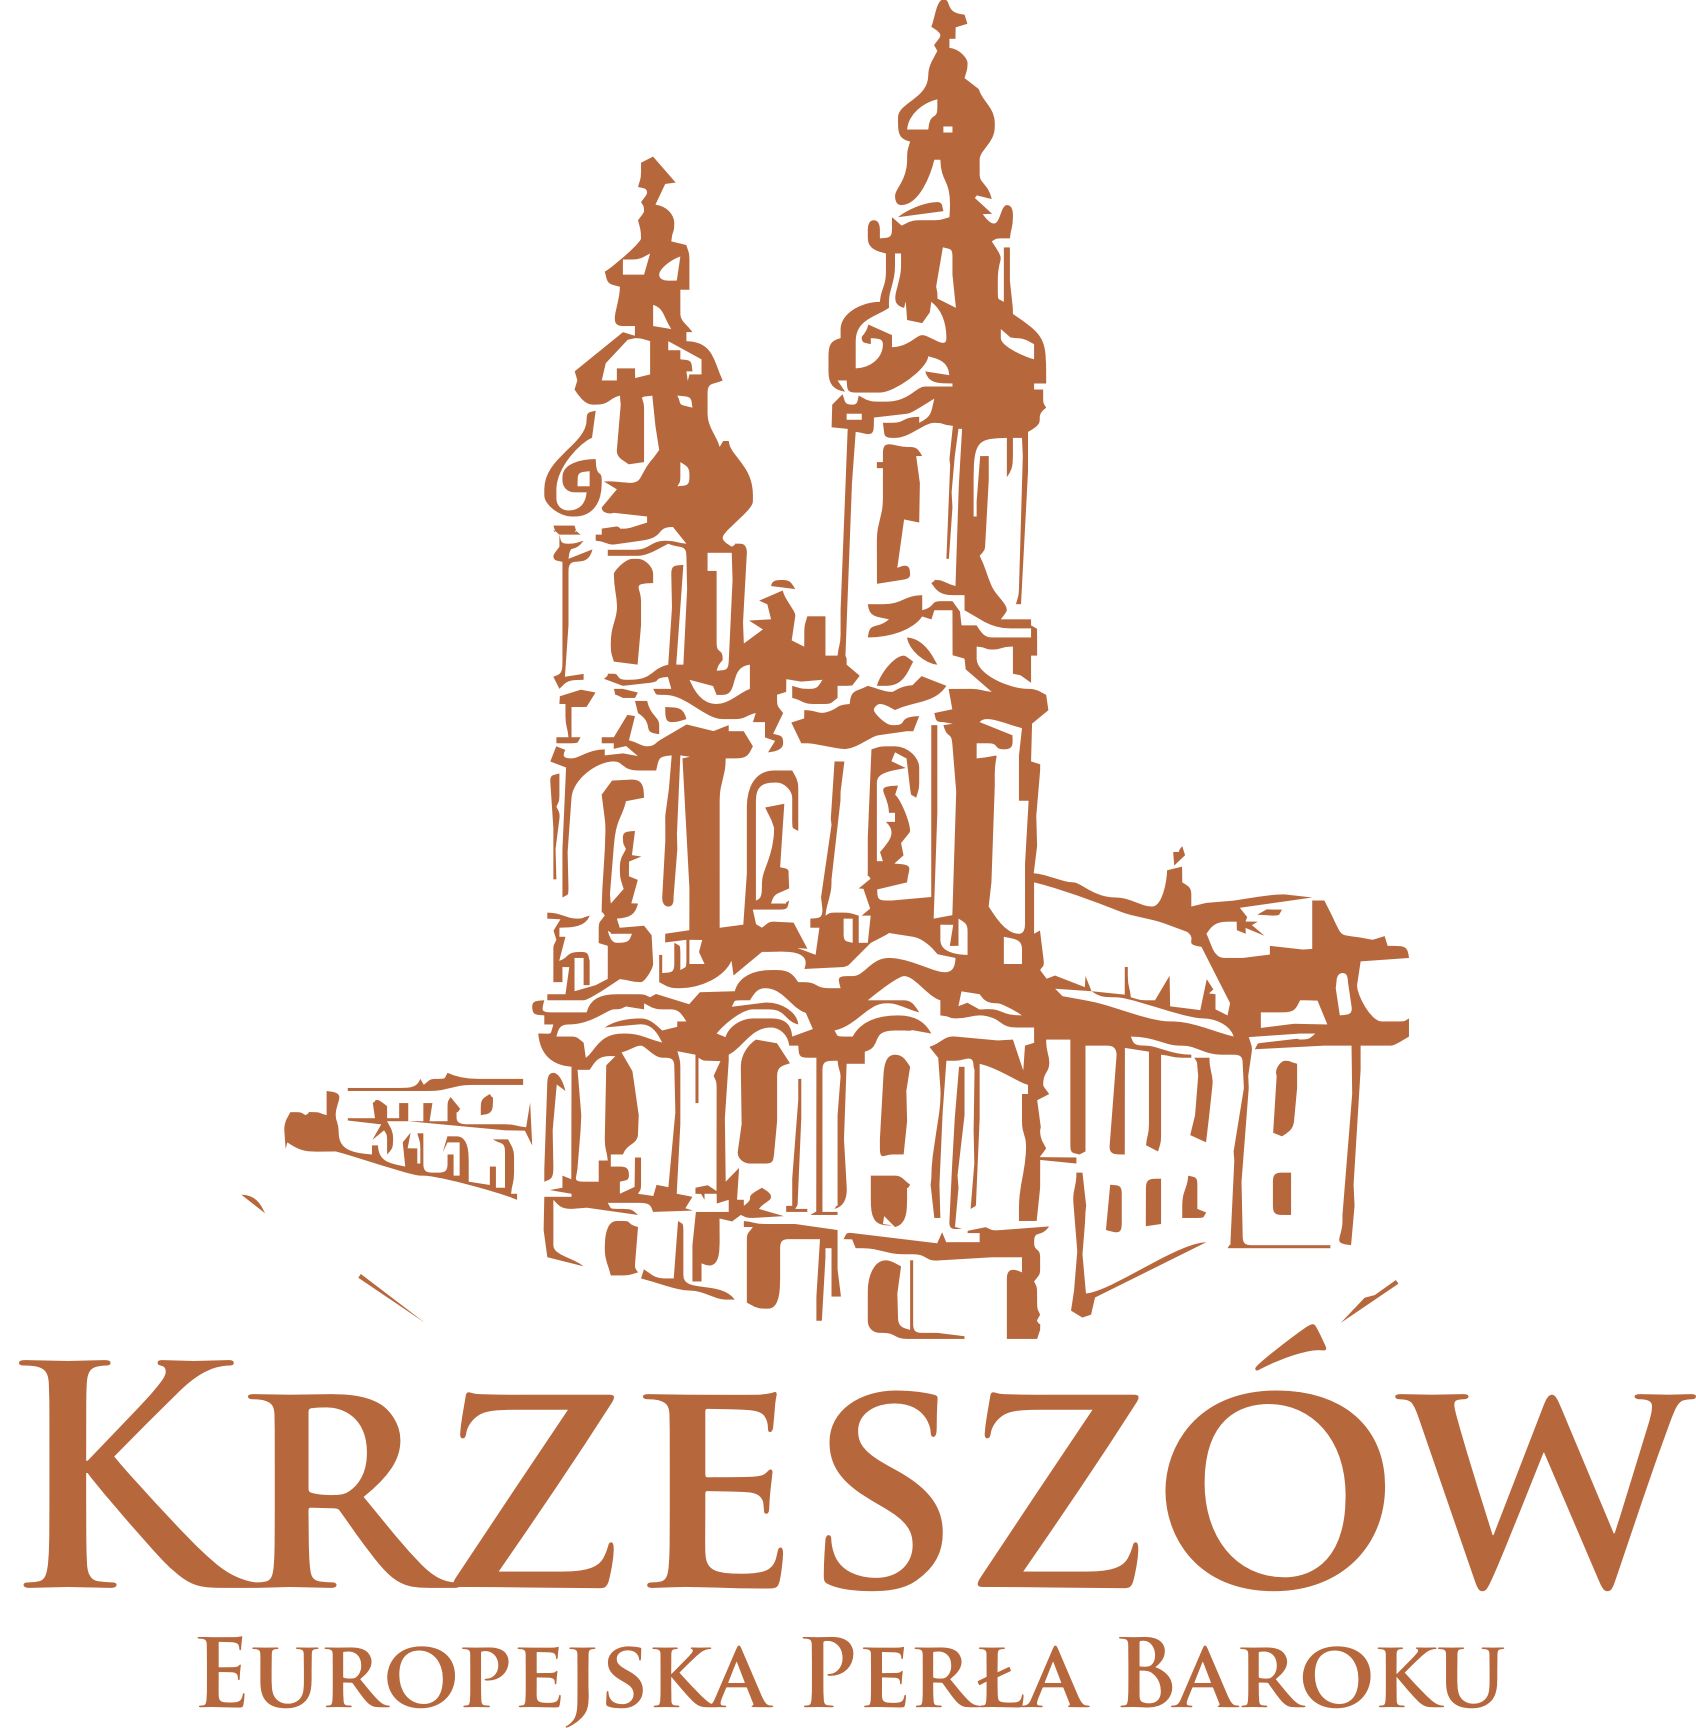 Krzeszow